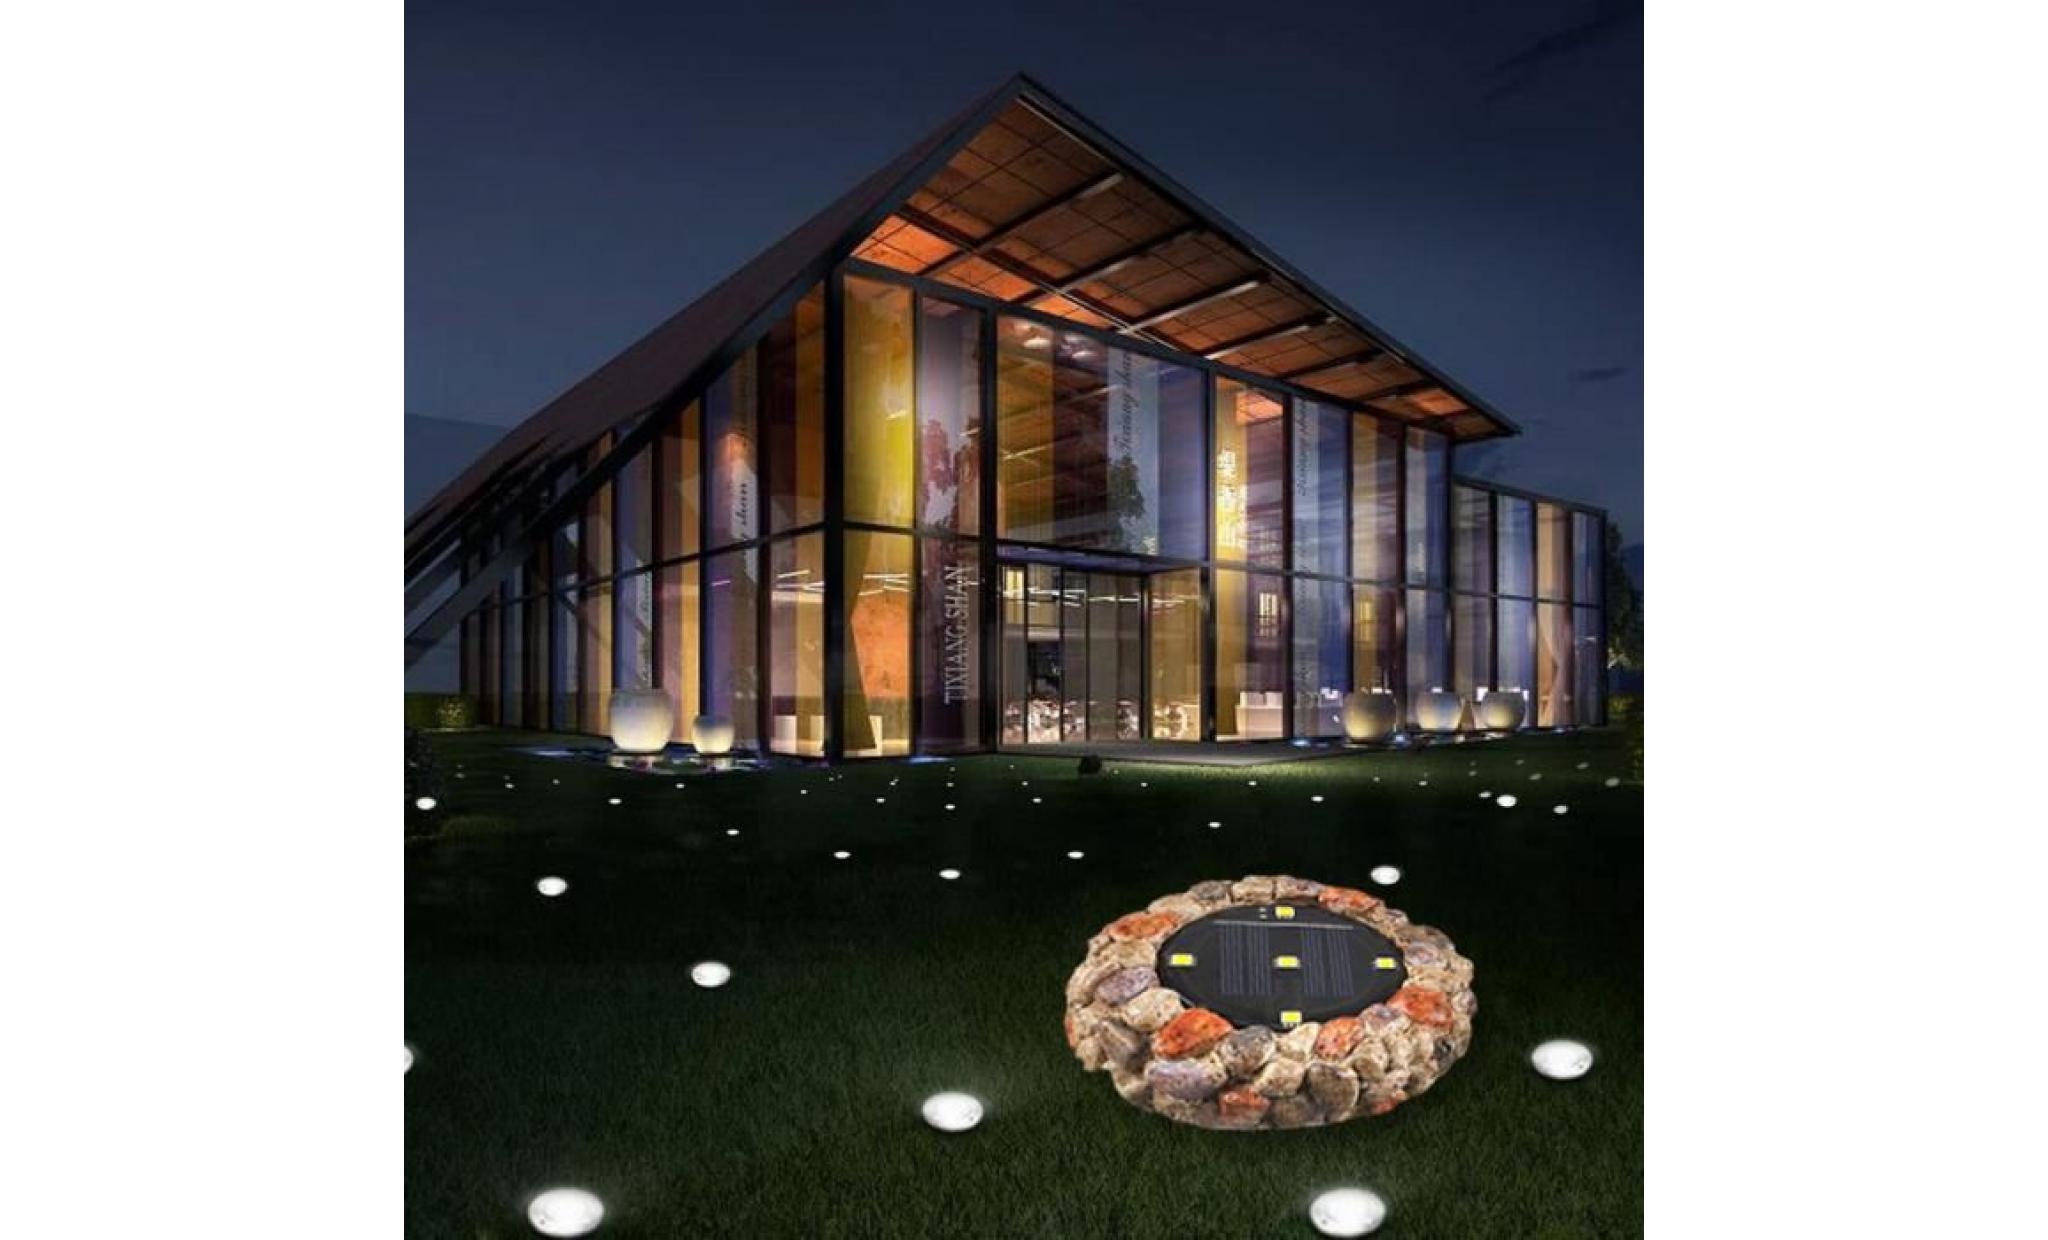 nouvelle lumière solaire souterrain étanche à l'eau 5led imitation pierre insérée lampe d'herbe jardin jardin a lpp80808943a_812